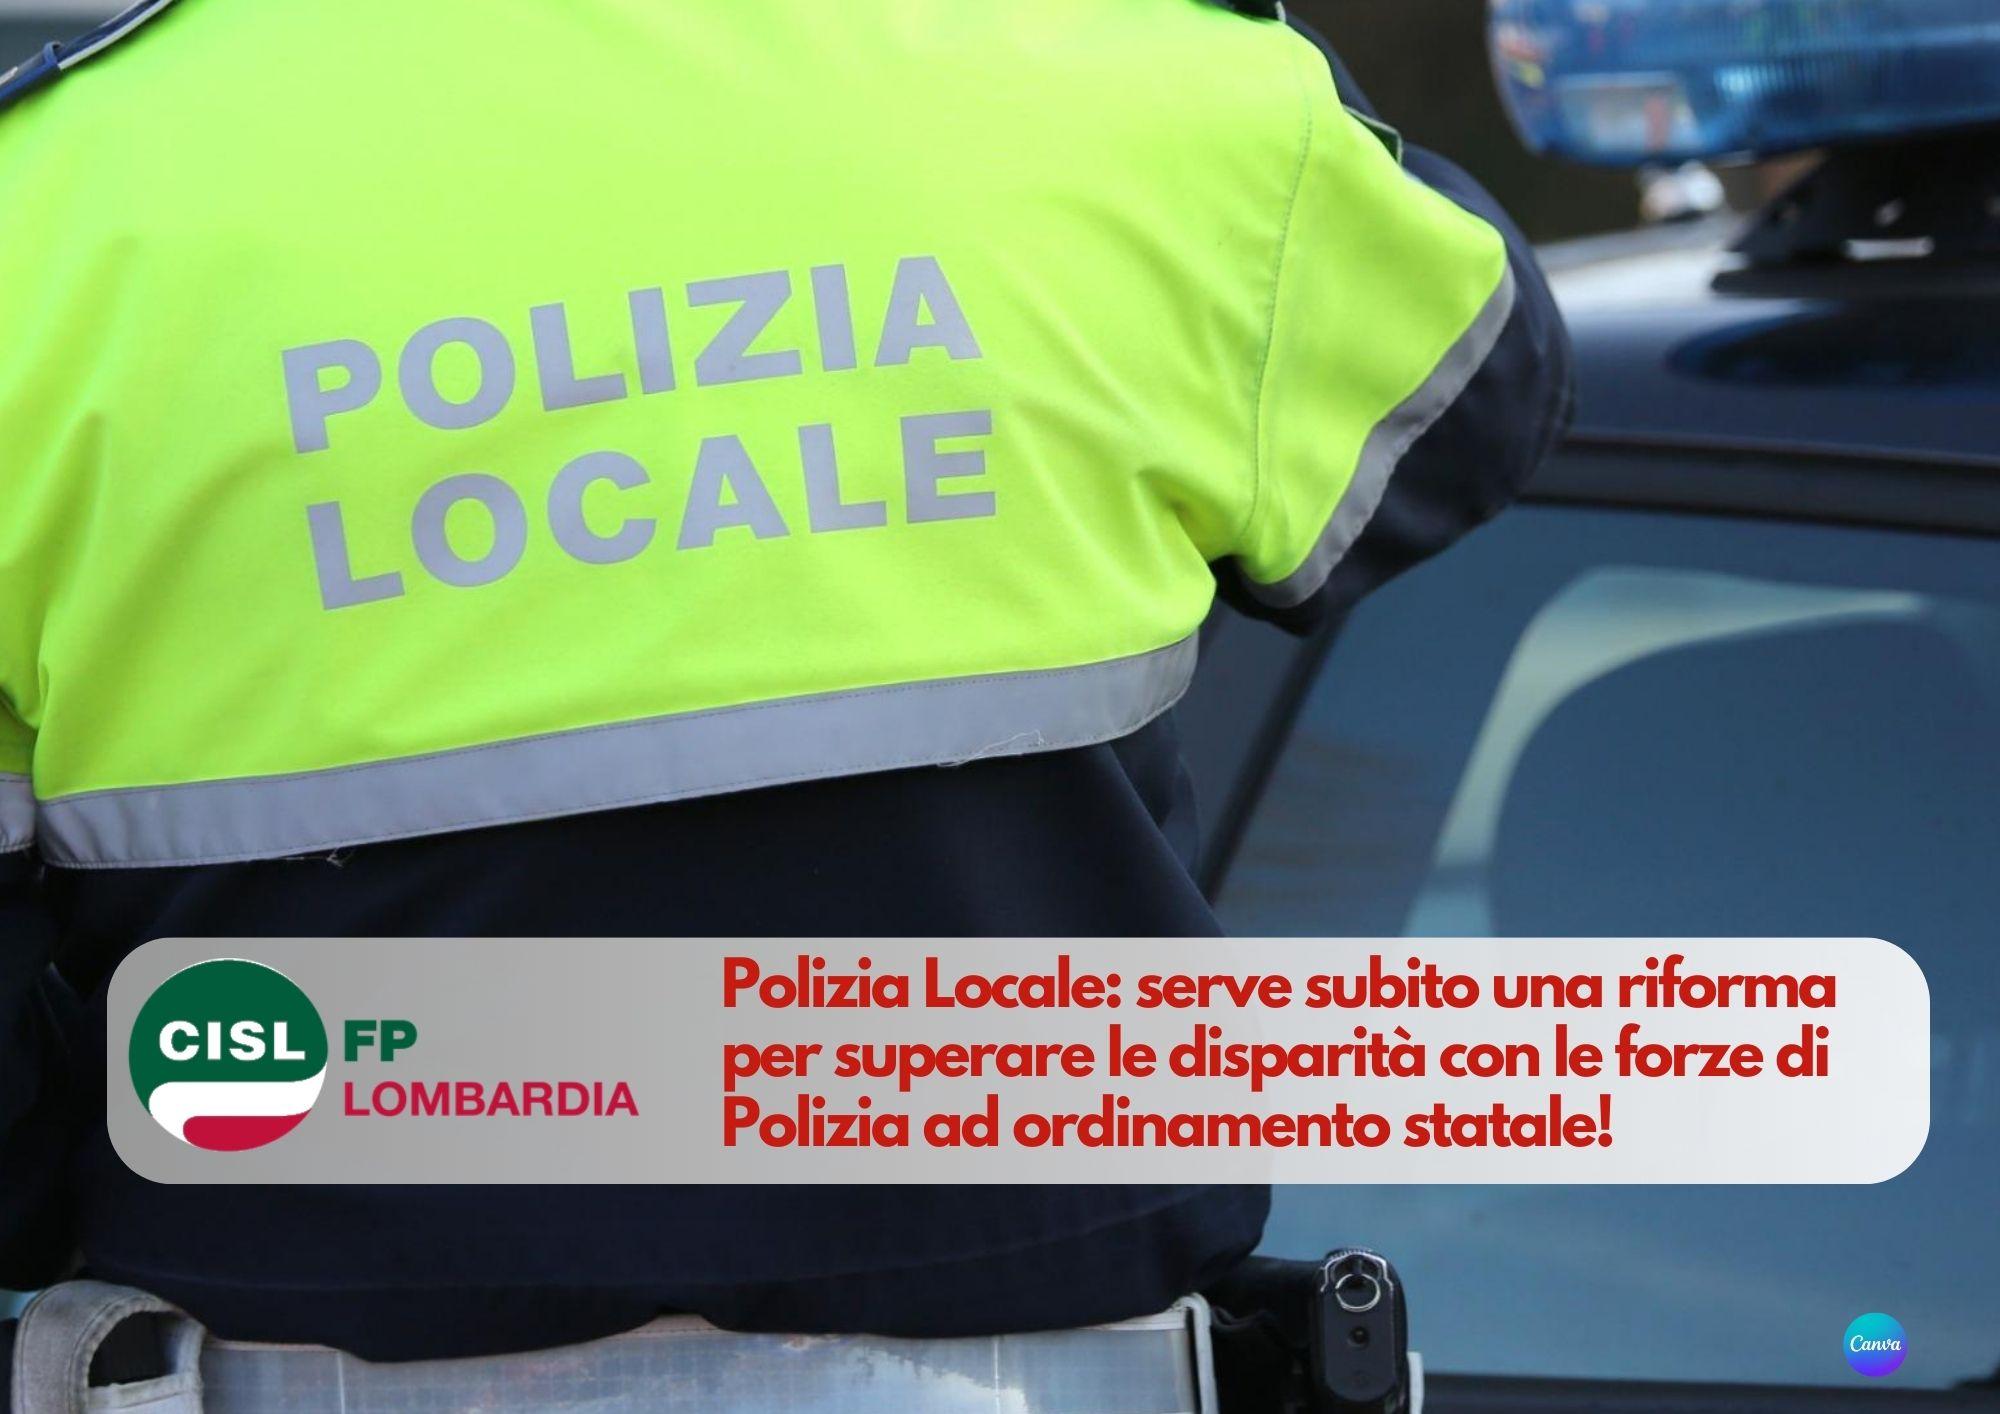 CISL FP Lombardia. Polizia Locale: serve una riforma per superare le disparità. Da fare ora!